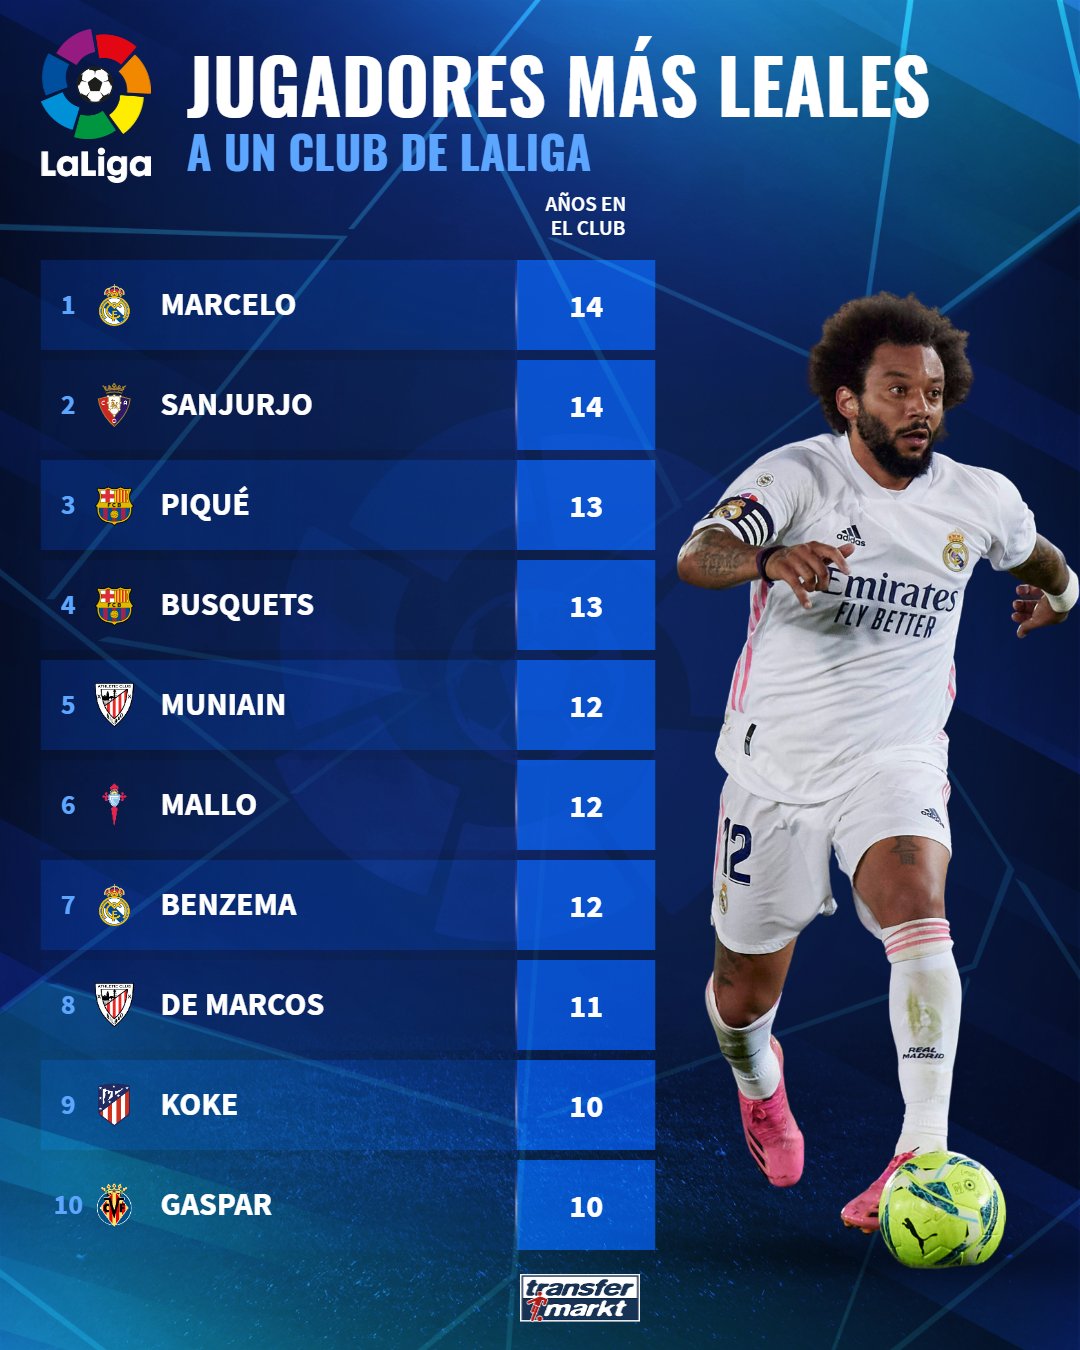 قائمة أكثر اللاعبين مشاركة مع نادي واحد في الدوري الإسباني